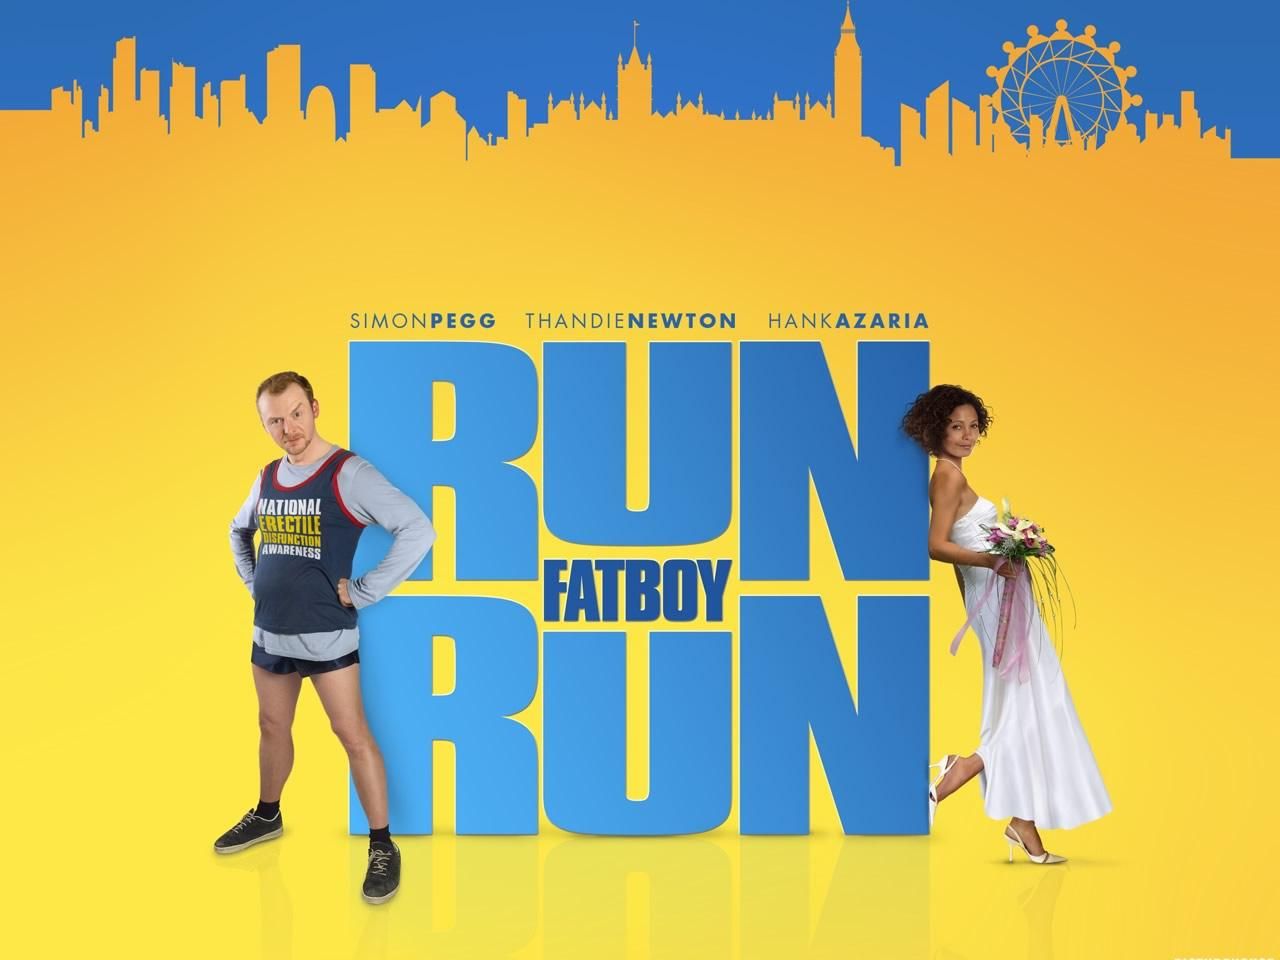 Фильм Беги, толстяк, беги | Run Fatboy Run - лучшие обои для рабочего стола